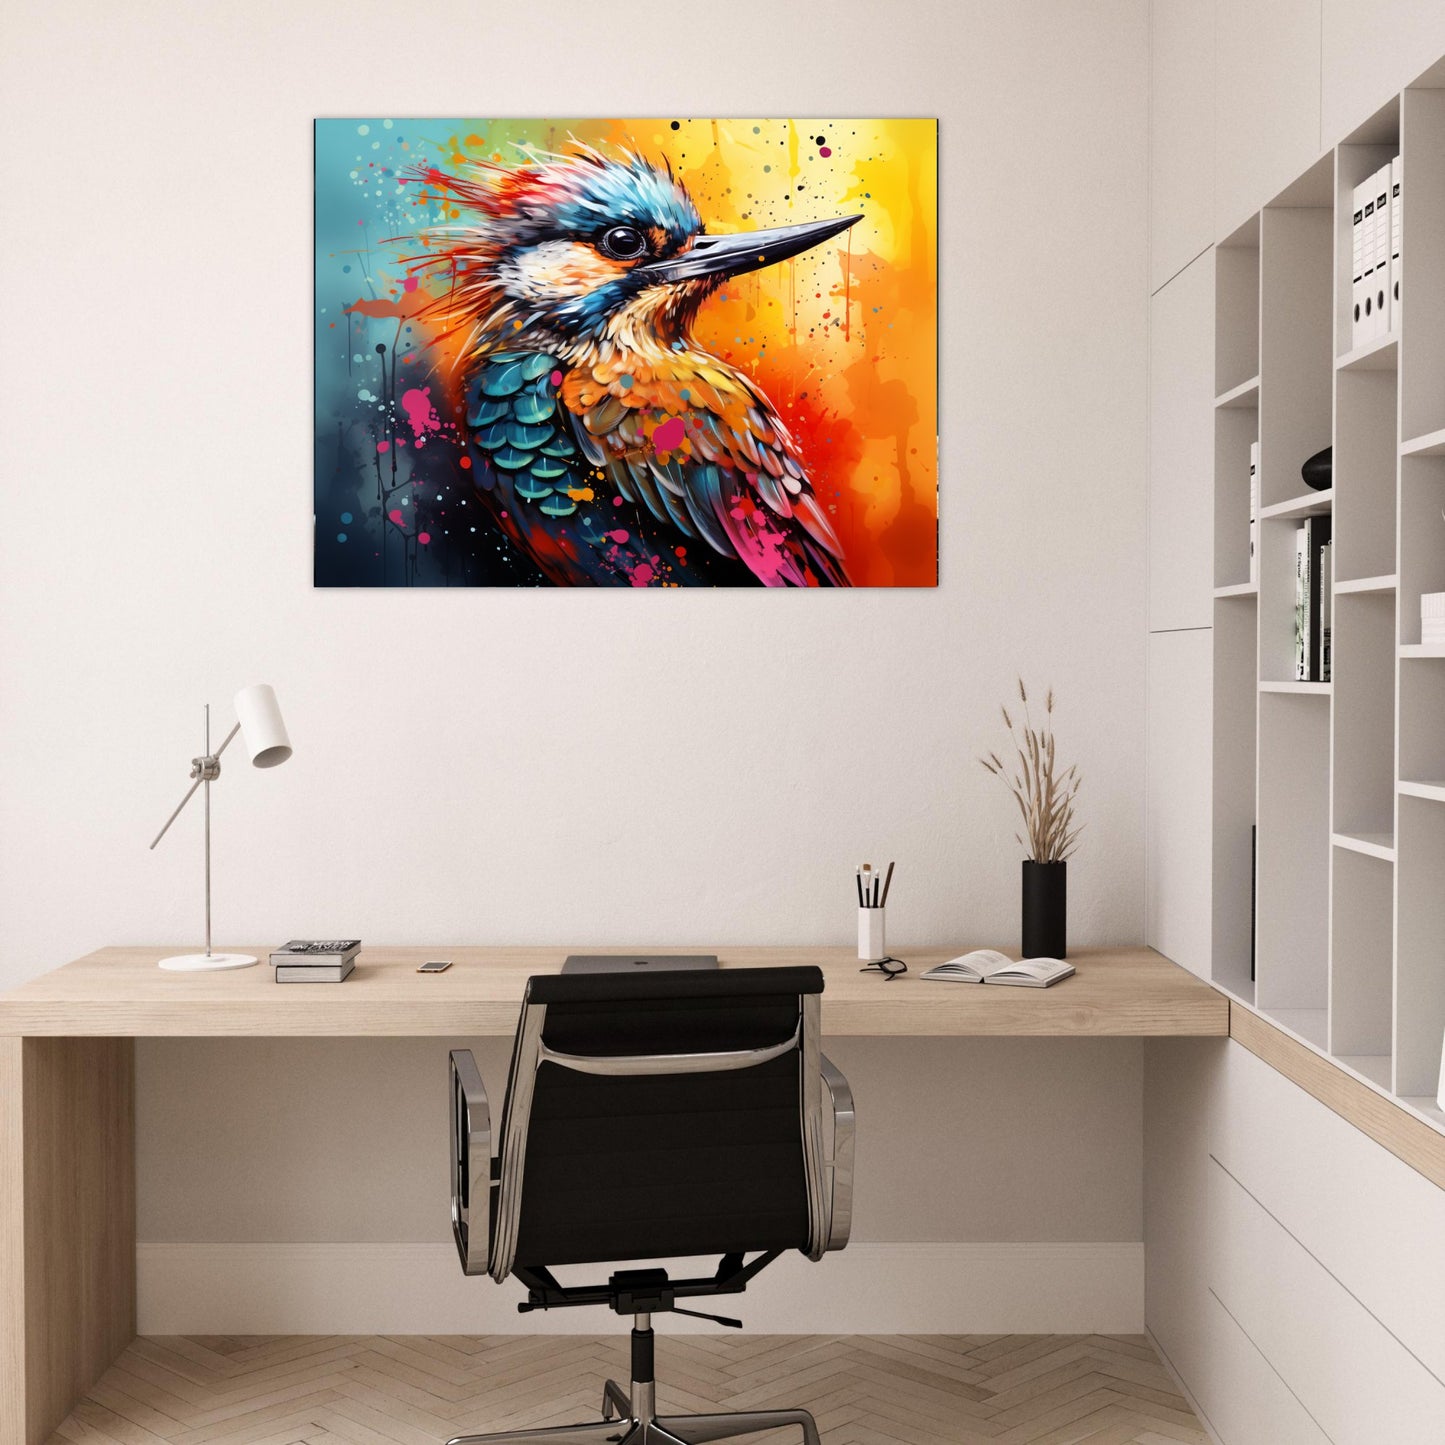 Farbenpracht des Eisvogels 30x40 cm / 12x16″ / Poster auf halbmattem Papier